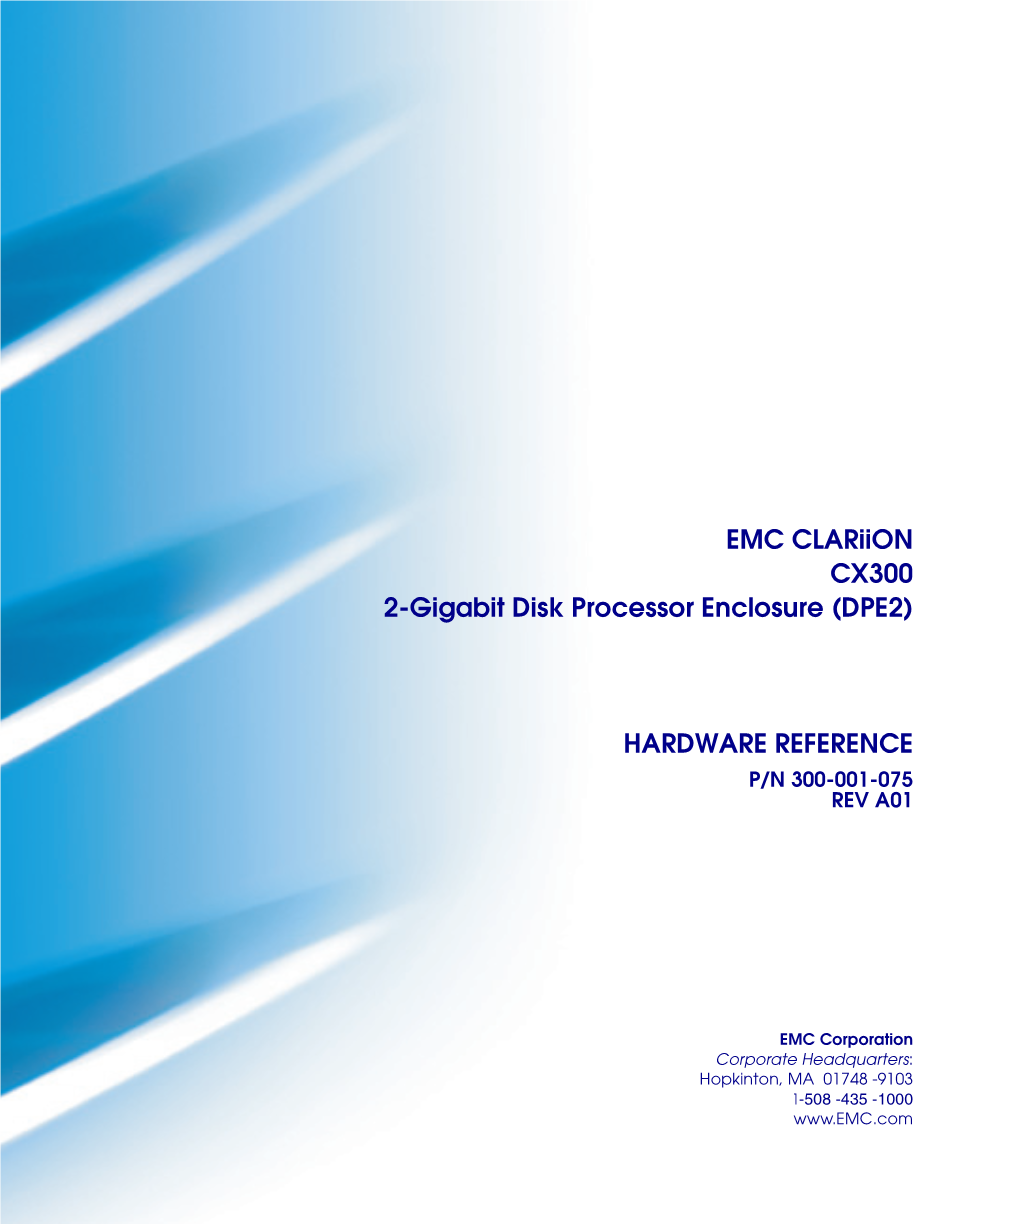 EMC Clariion CX300 2-Gigabit Disk Processor Enclosure (DPE2)